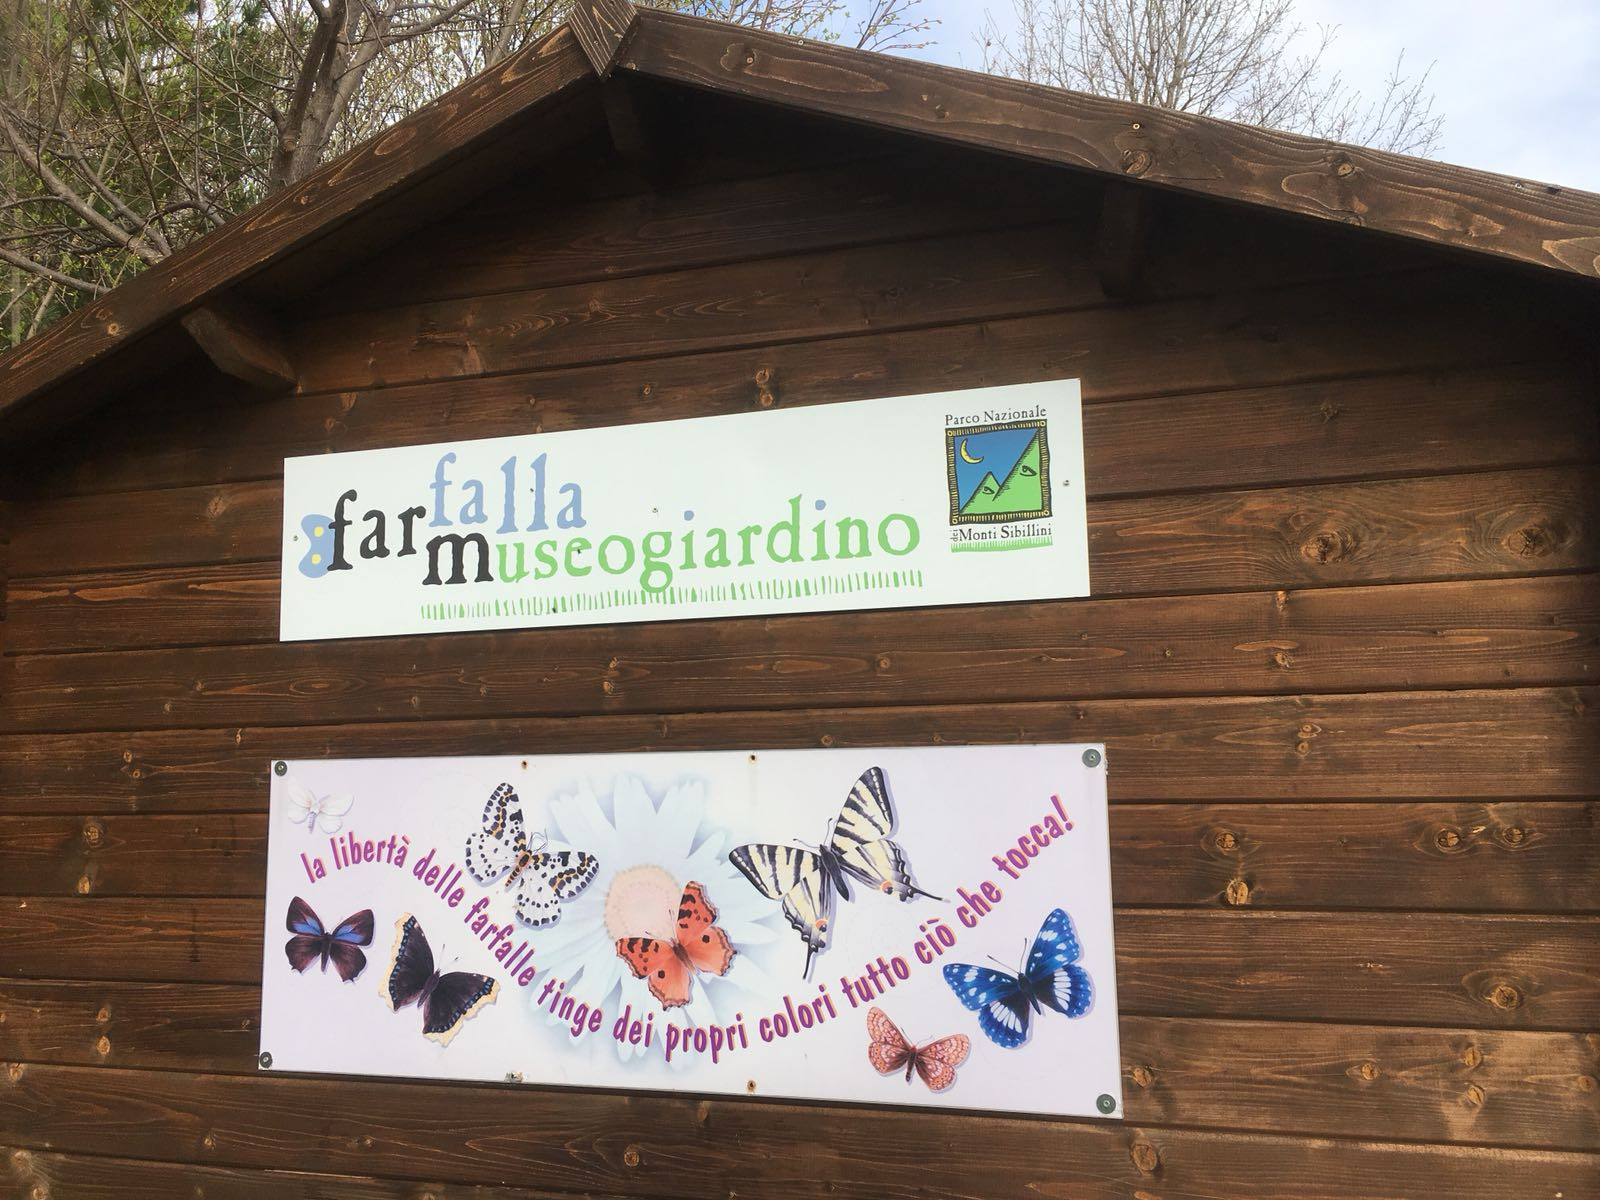 Studi umanistici — Università di Macerata: Una giornata al Giardino delle  farfalle